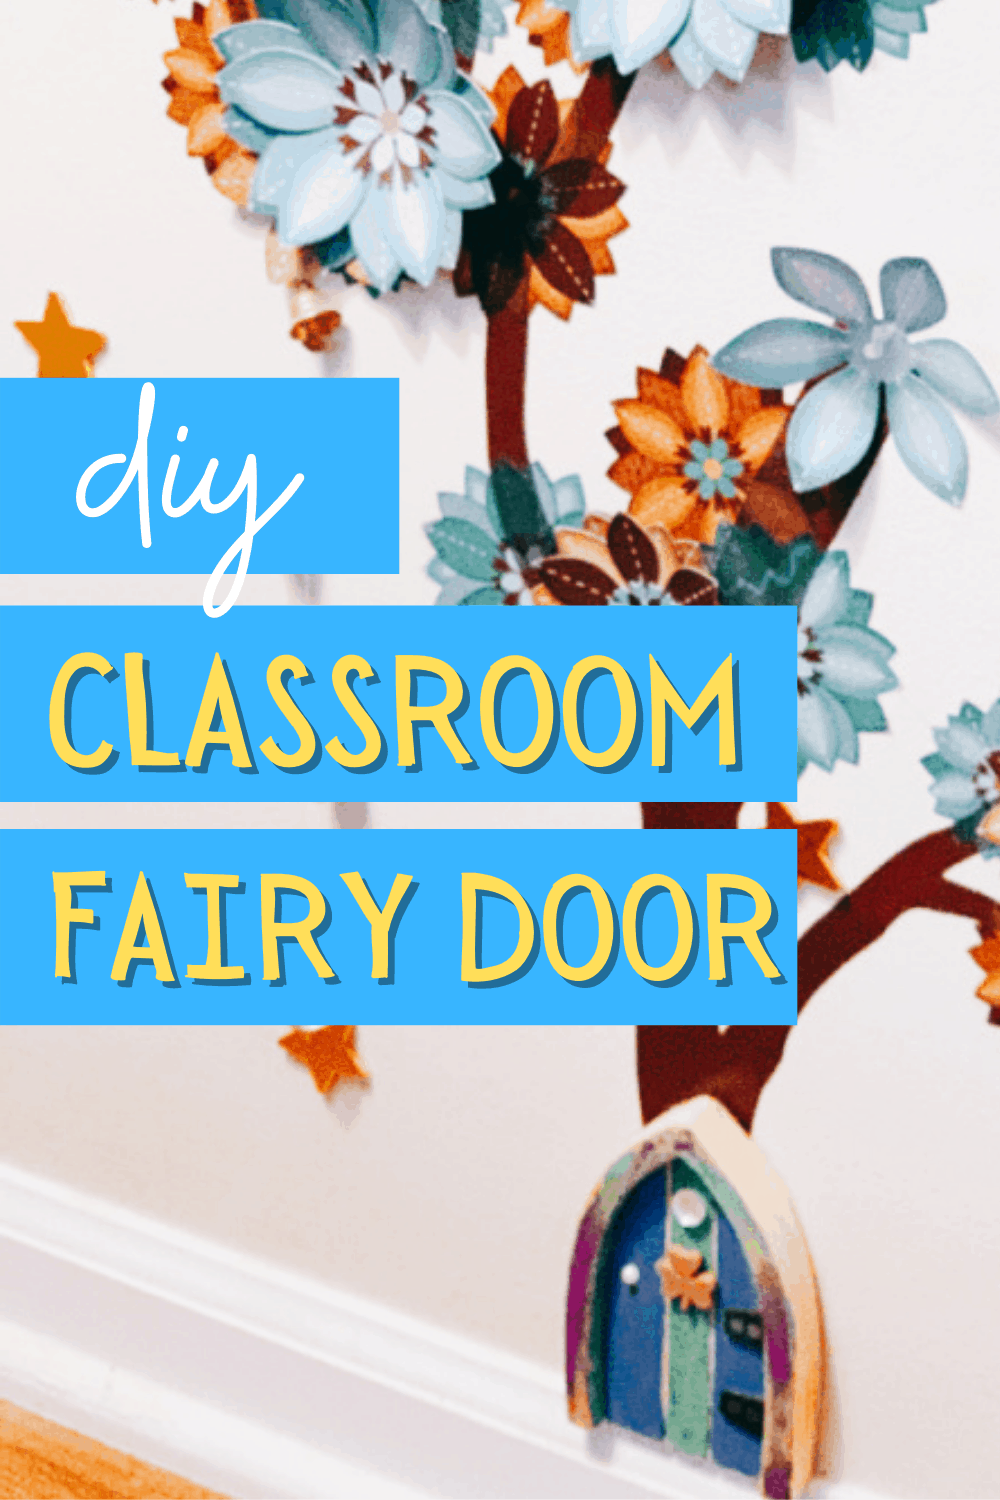 DIY Fairy Door In Classroom How To